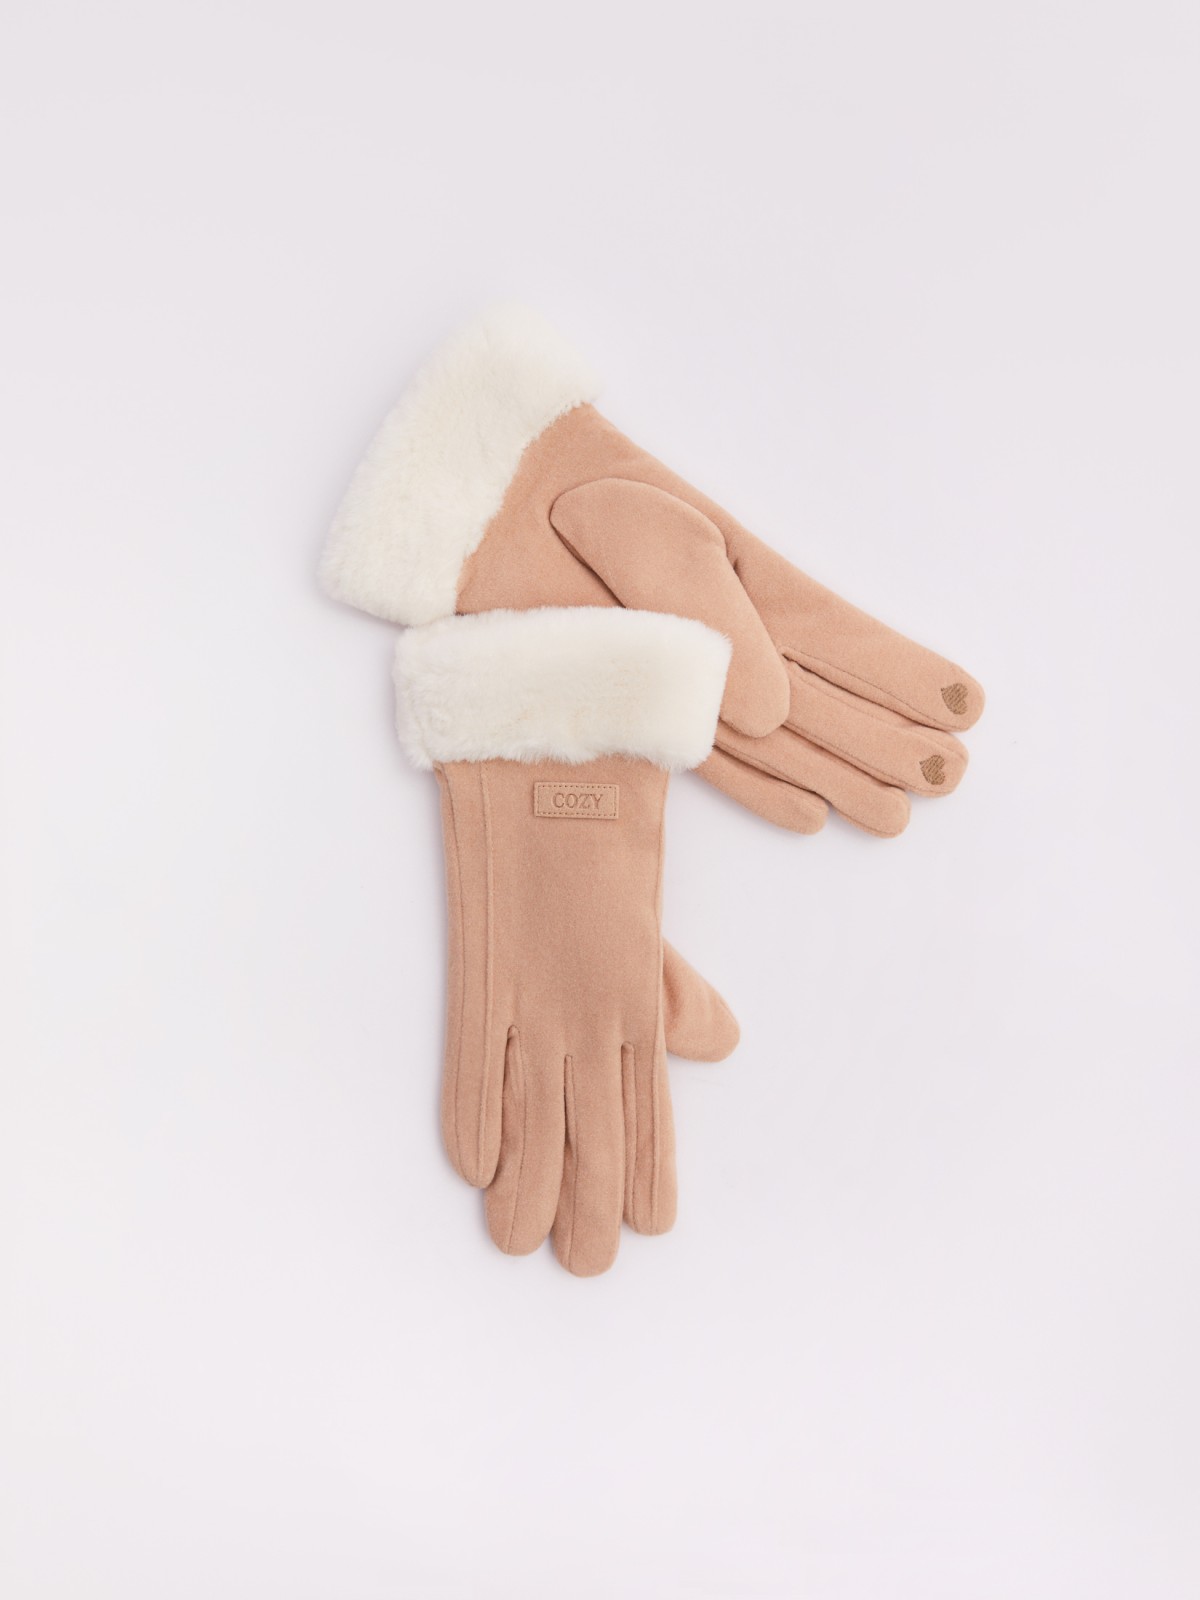 Тёплые перчатки с опушкой из экомеха и начёсом zolla 023429659025, цвет молоко, размер S - фото 1